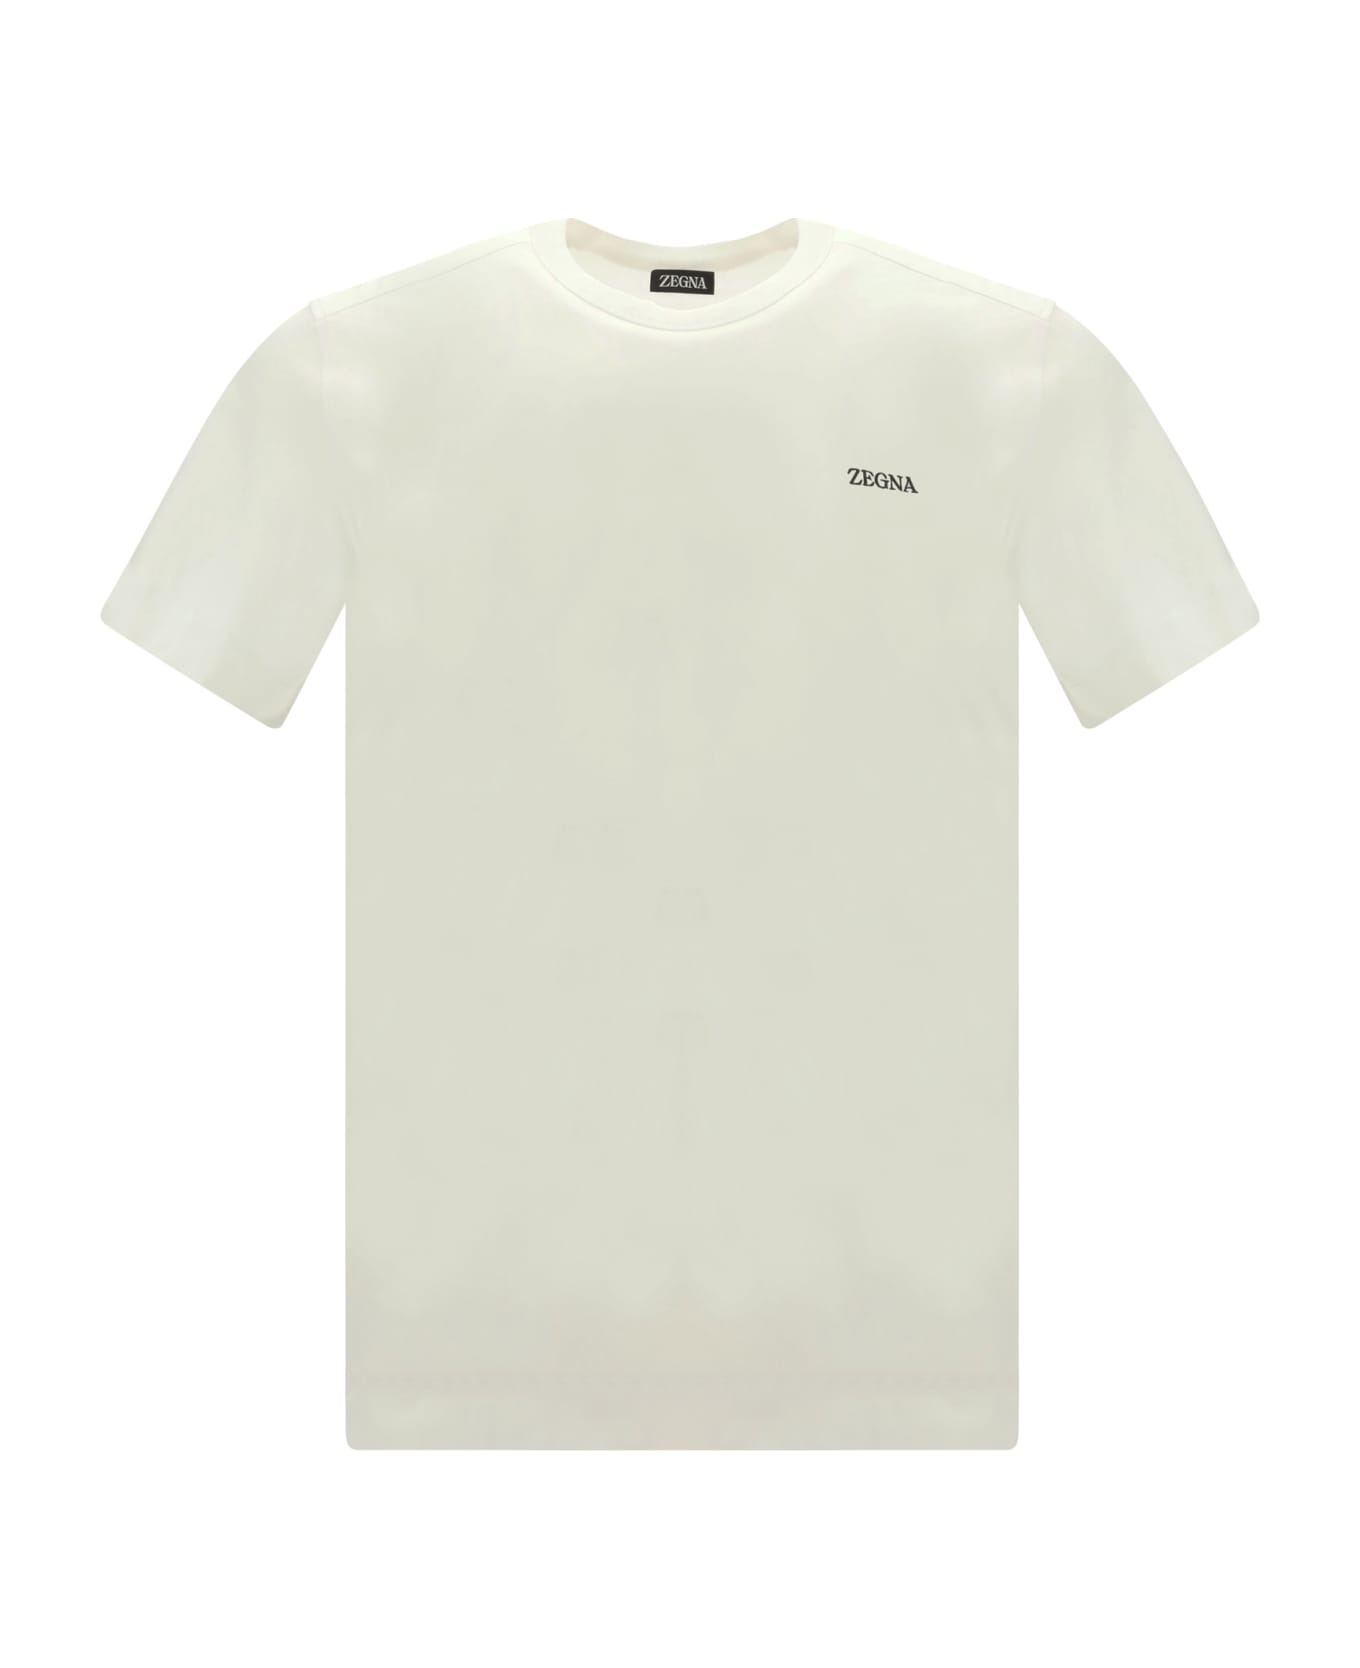 Zegna T-shirt - N00 シャツ